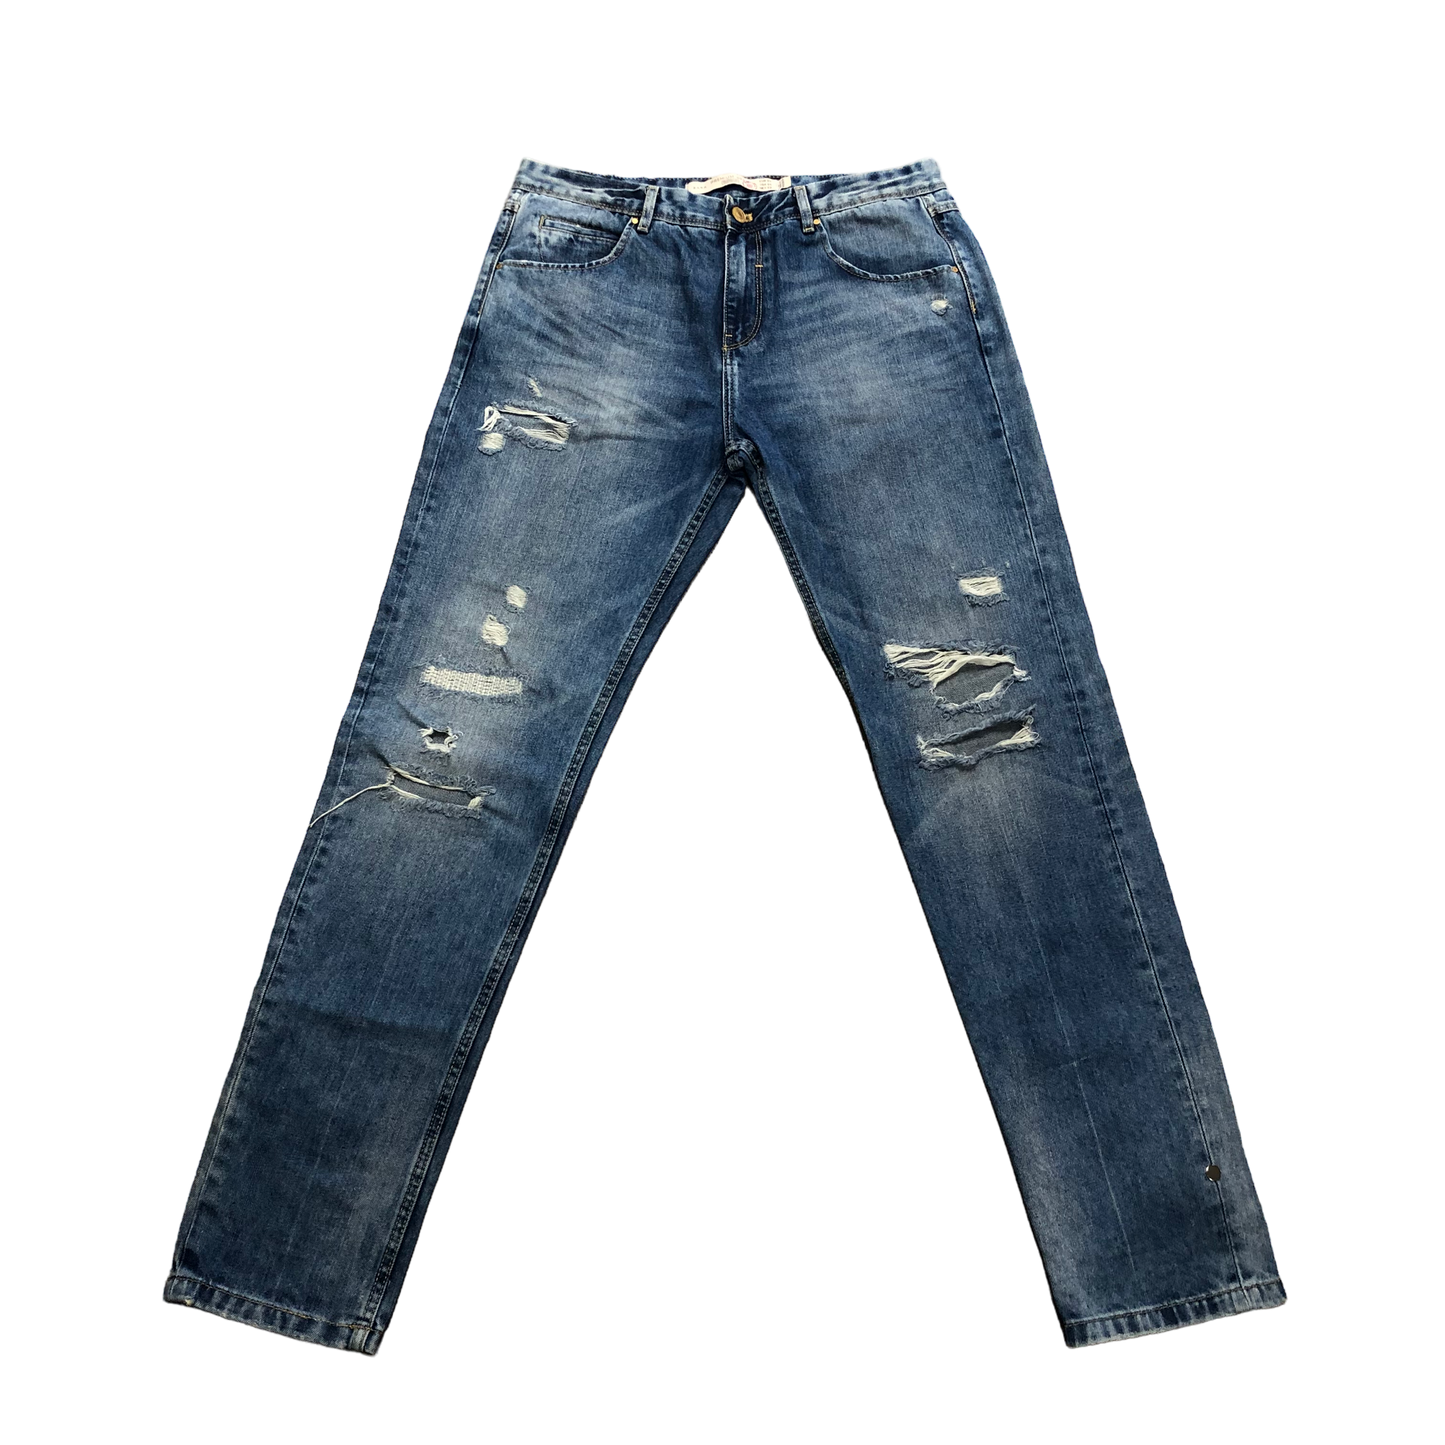 Jeans Boyfriend By Zara  Size: 6